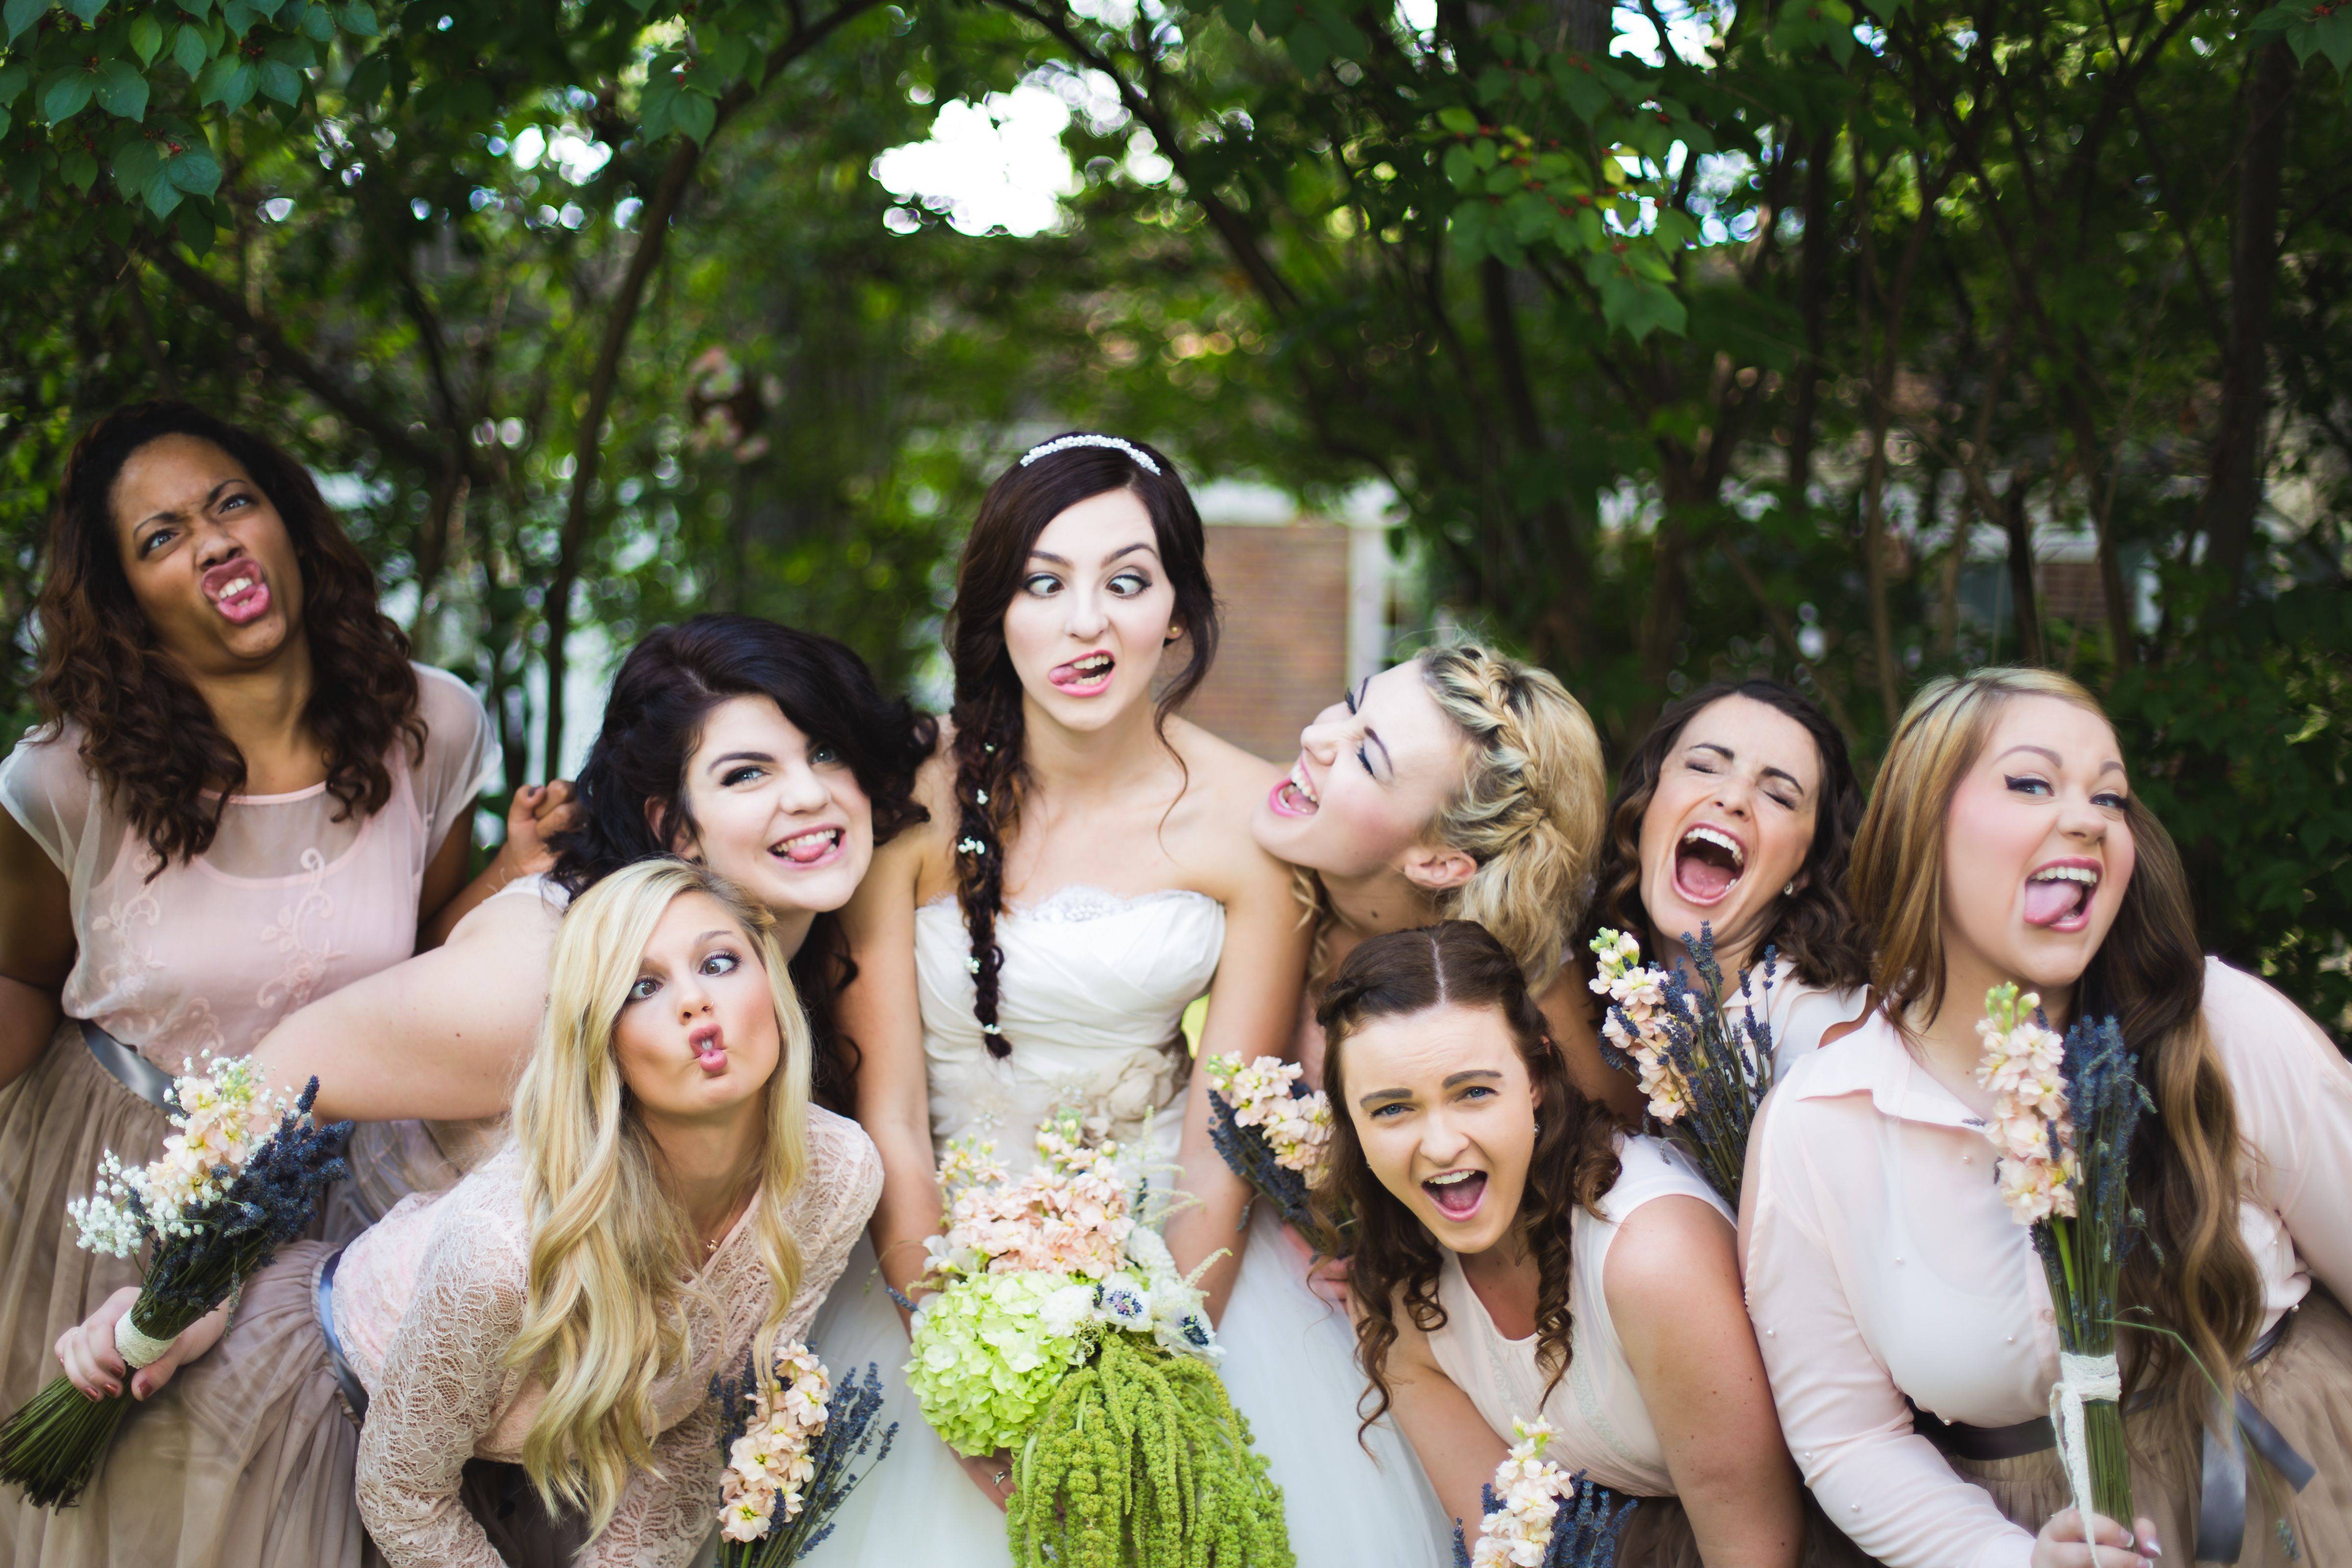 Конкурсы для девичника: 15 веселых идей для подруг - hot wedding